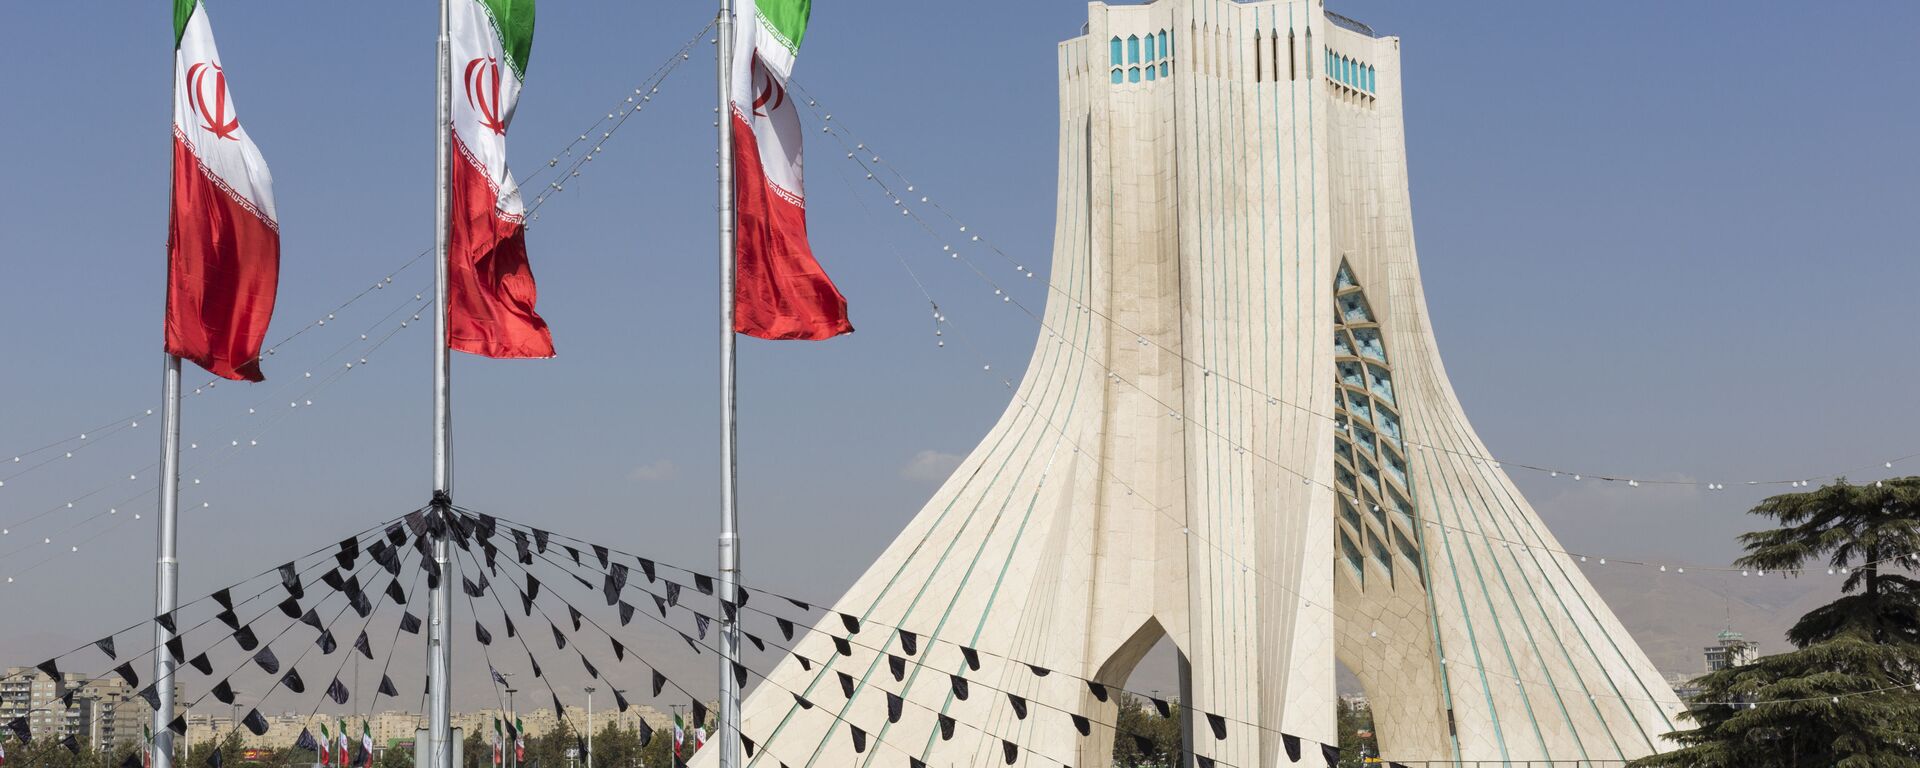 کاندیدای کفن پوش در ستاد انتخاباتی ریاست جمهوری ایران + تصاویر - اسپوتنیک ایران  , 1920, 11.05.2021